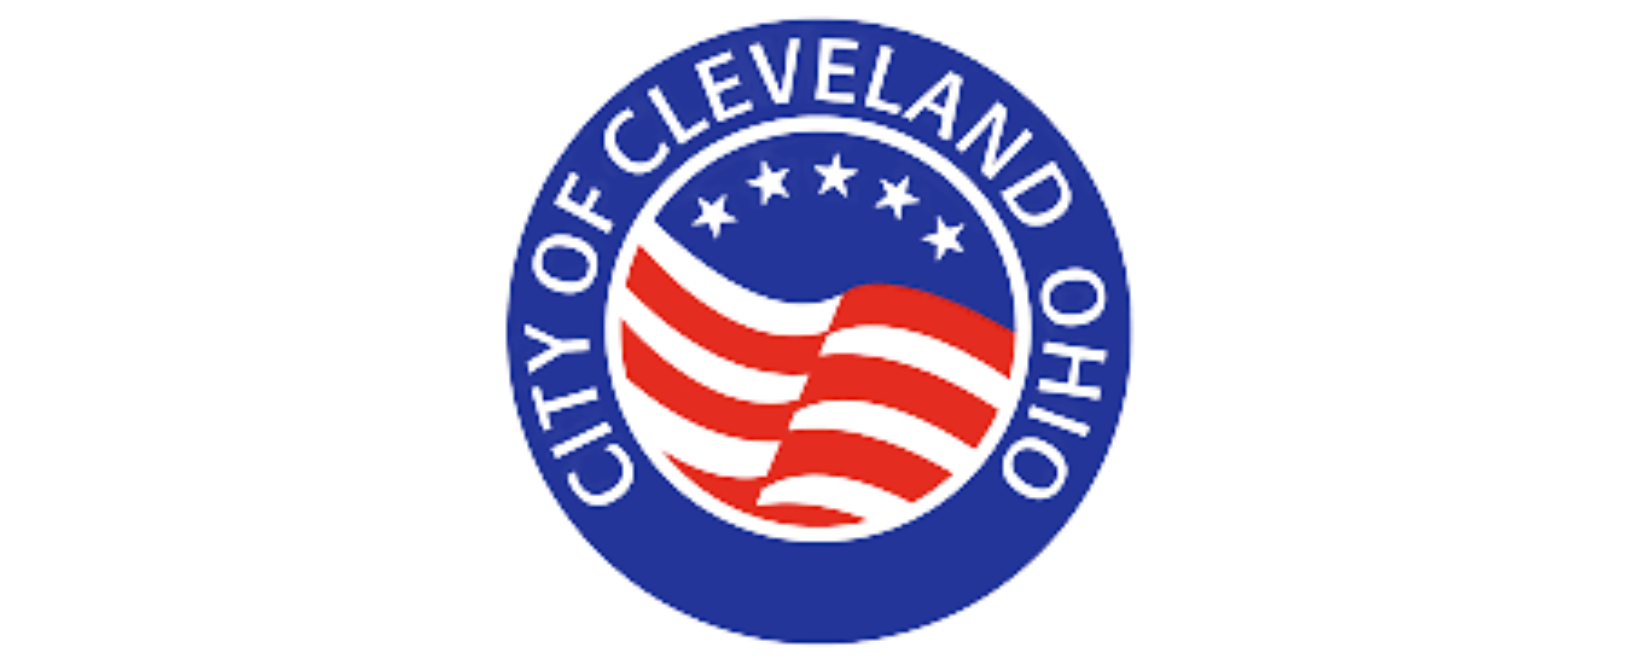 city of cleveland ohio jpg file